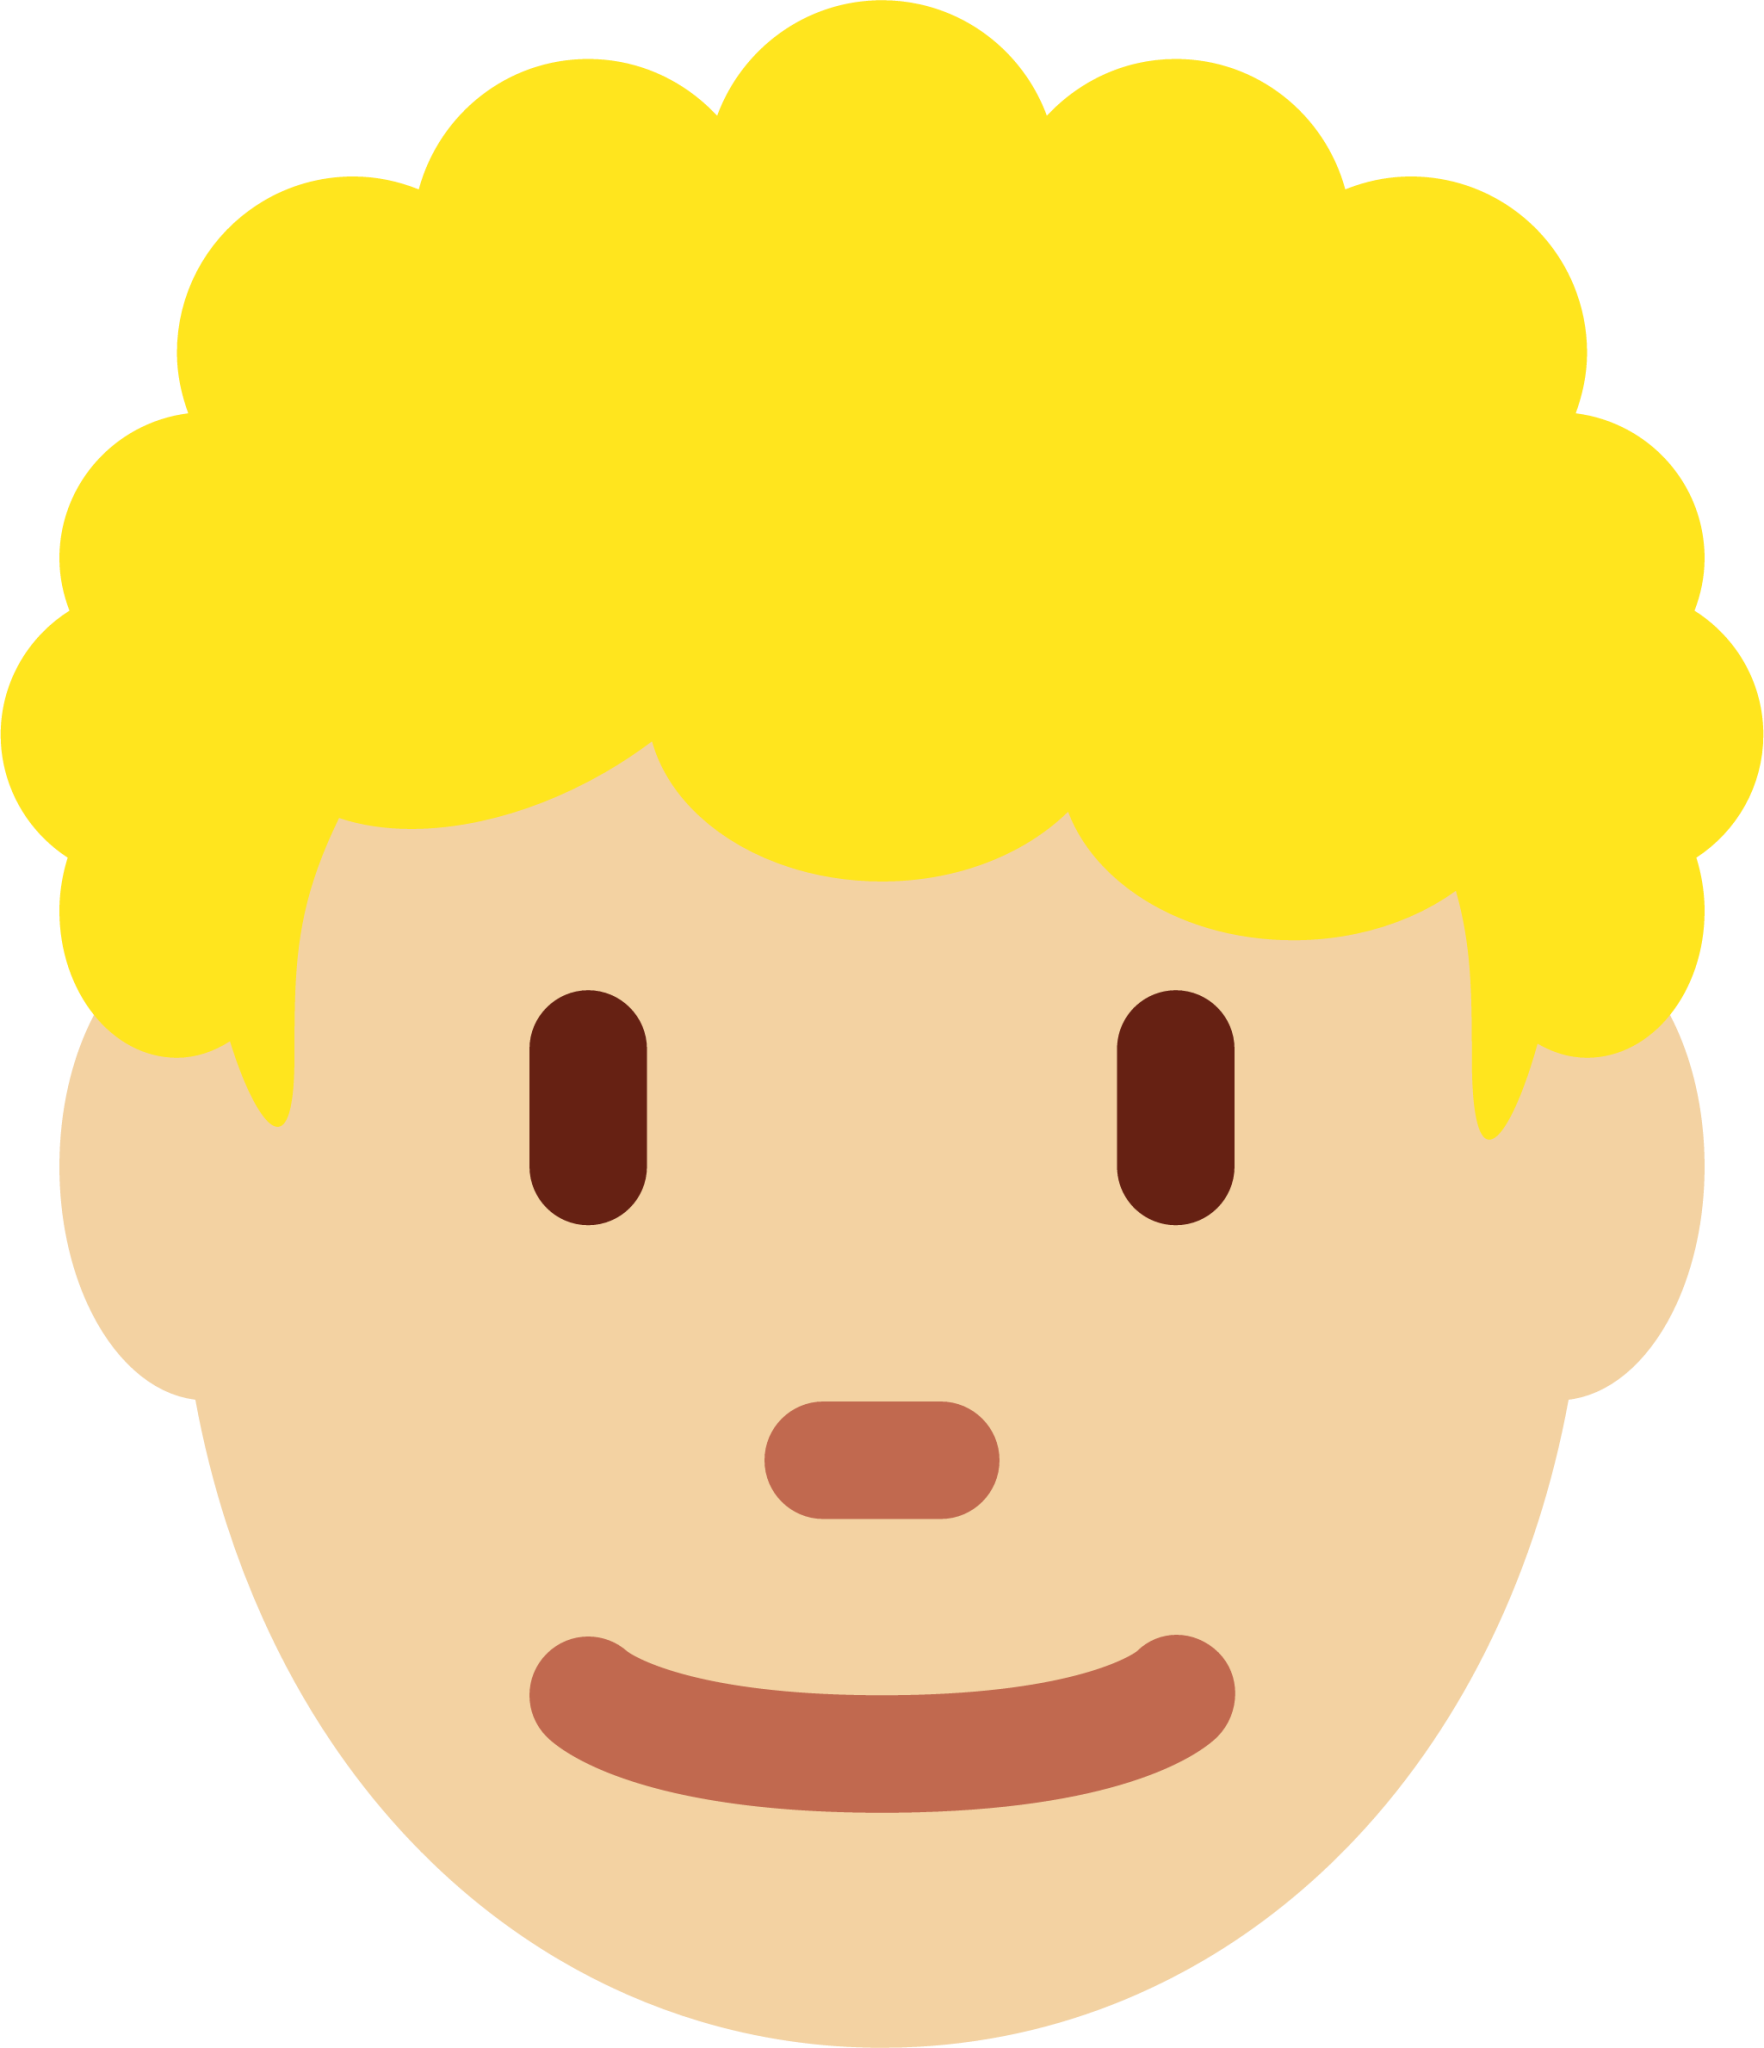 man: medium-light skin tone, curly hair emoji